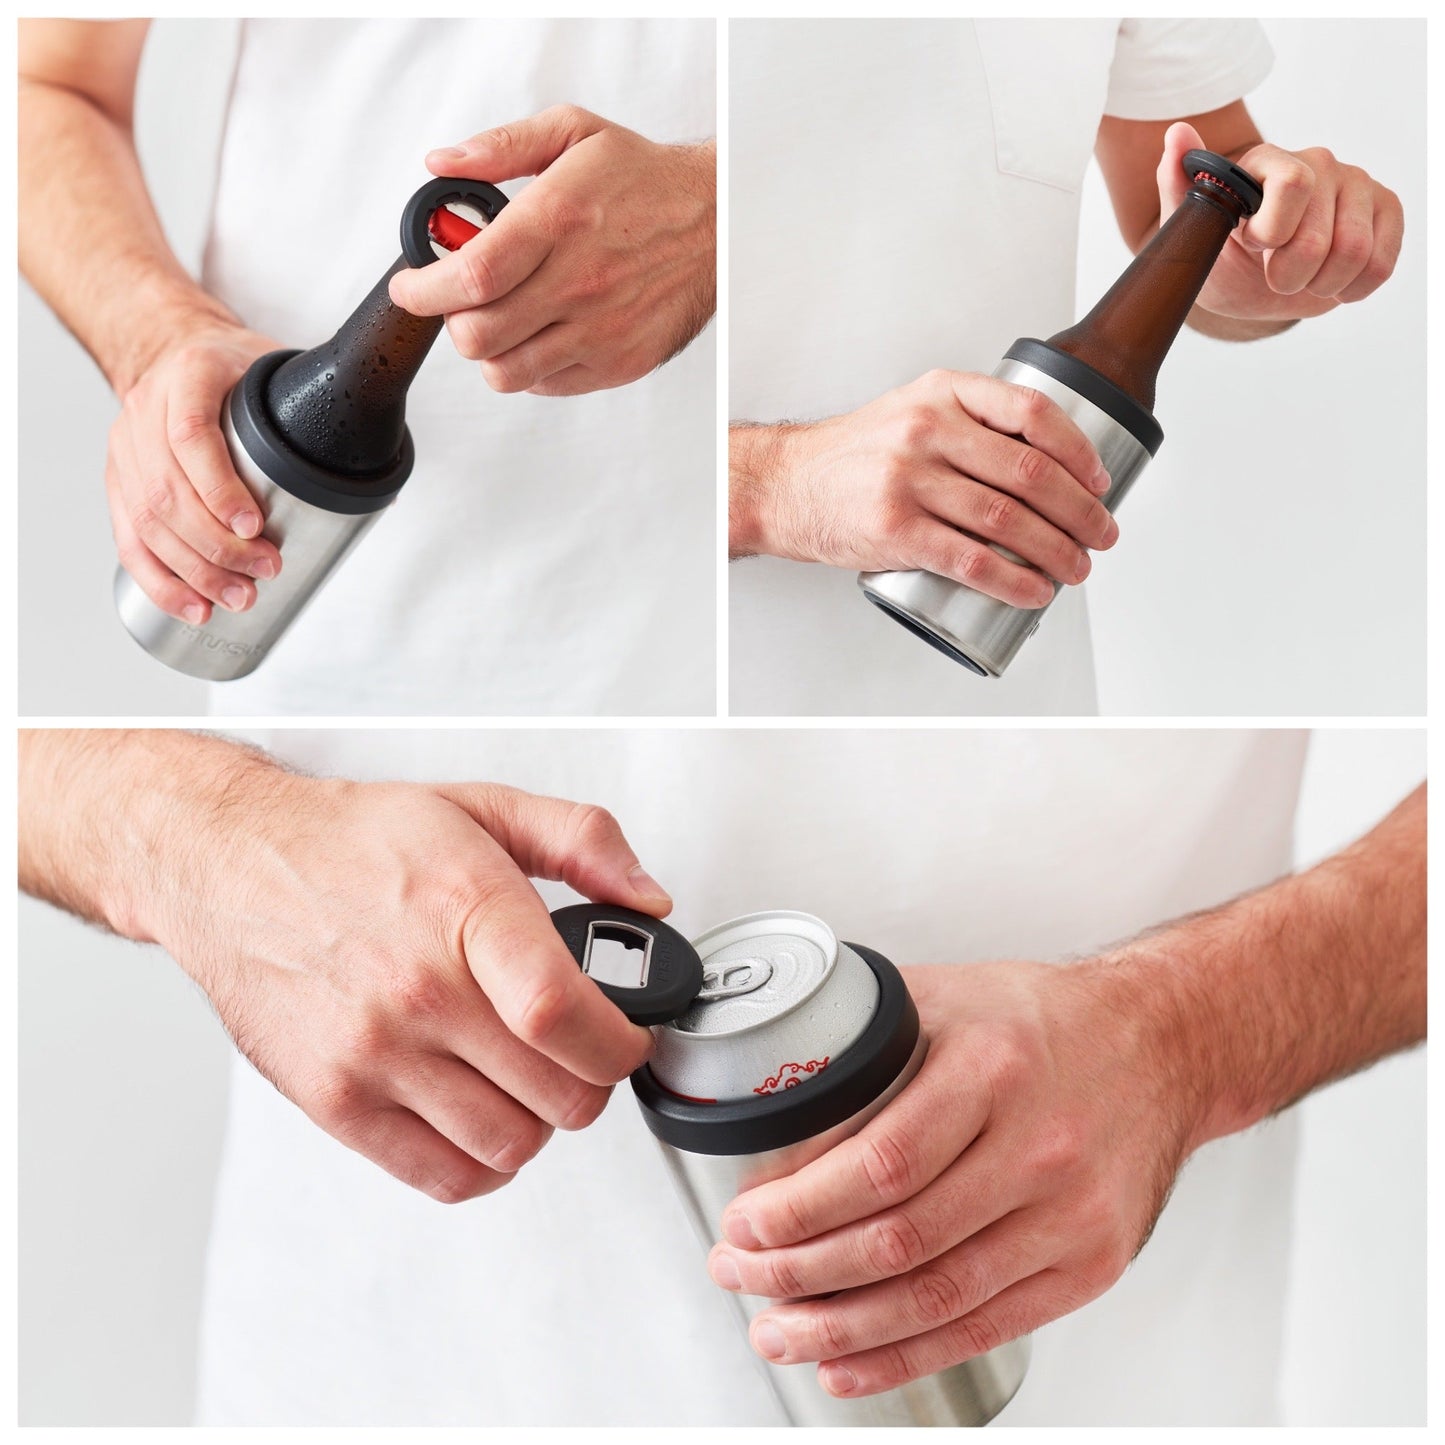 NEW: Huski 3-in-1 Bottle Opener Keyring